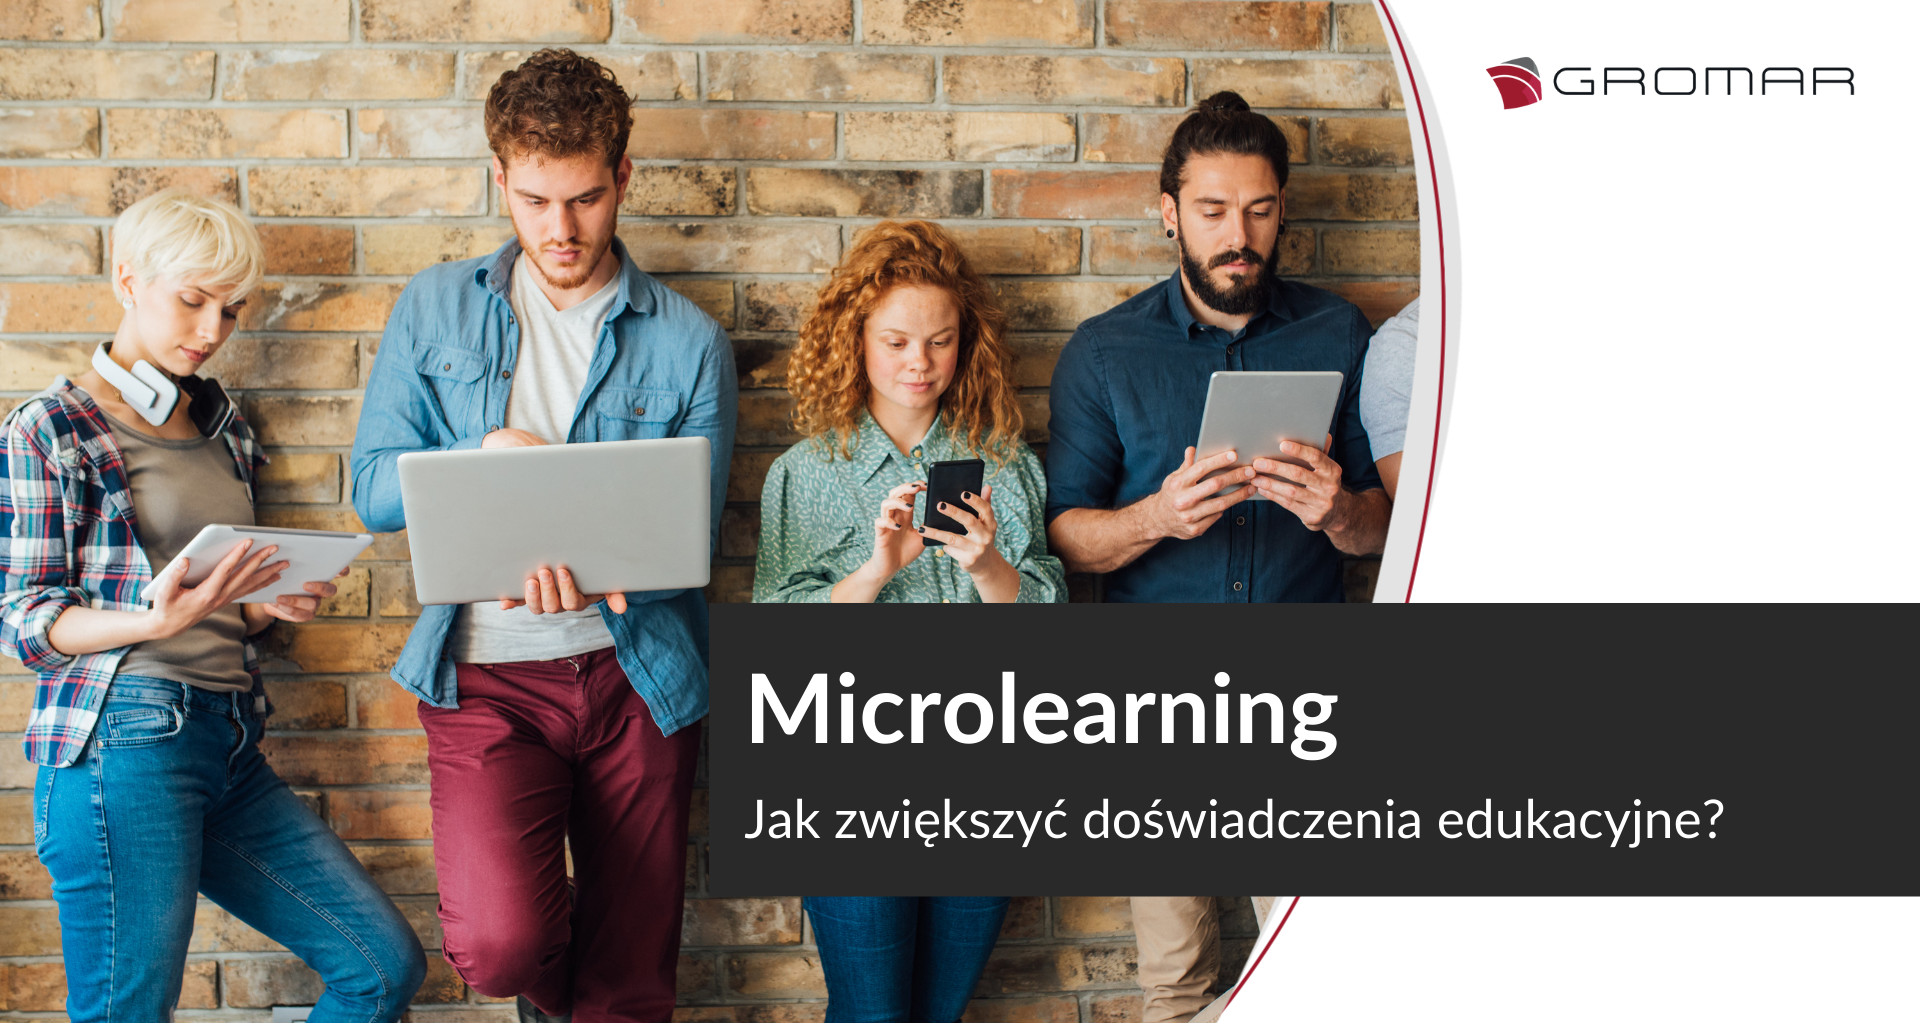 Microlearning. Jak zwiększyć doświadczenia edukacyjne pracowników?